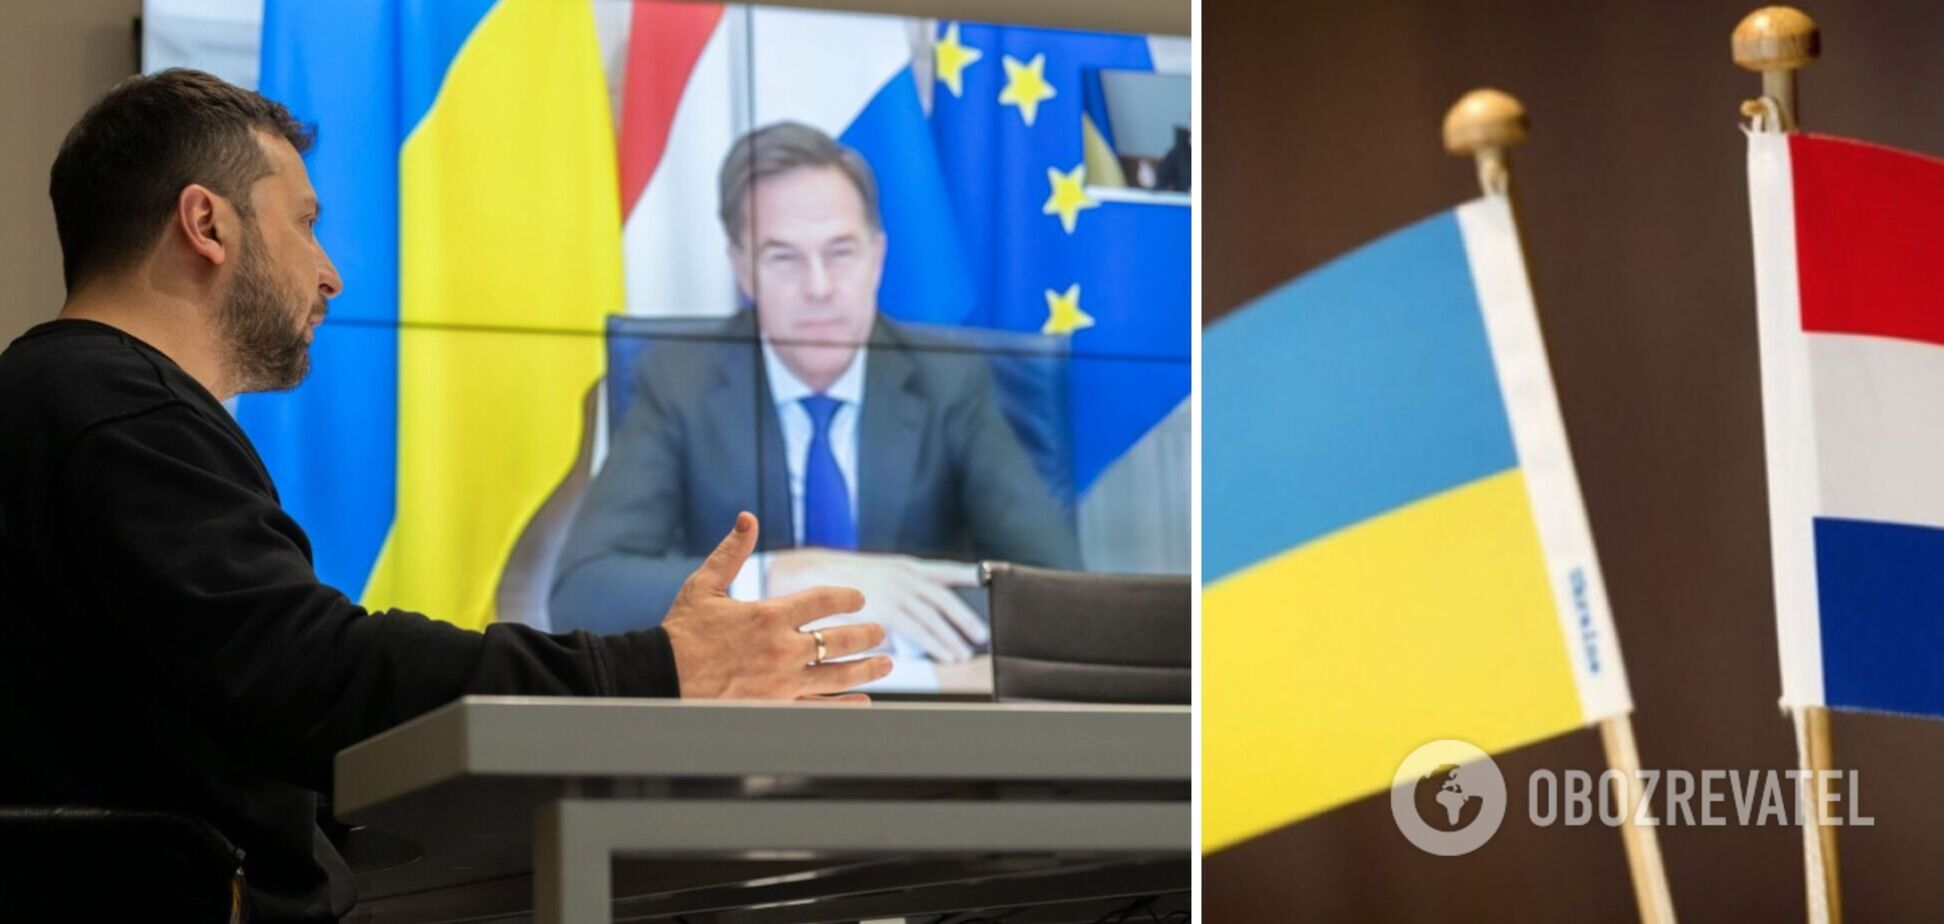 Обсудили оборонные нужды Украины: Зеленский провел переговоры с премьером Нидерландов Рютте. Фото и видео